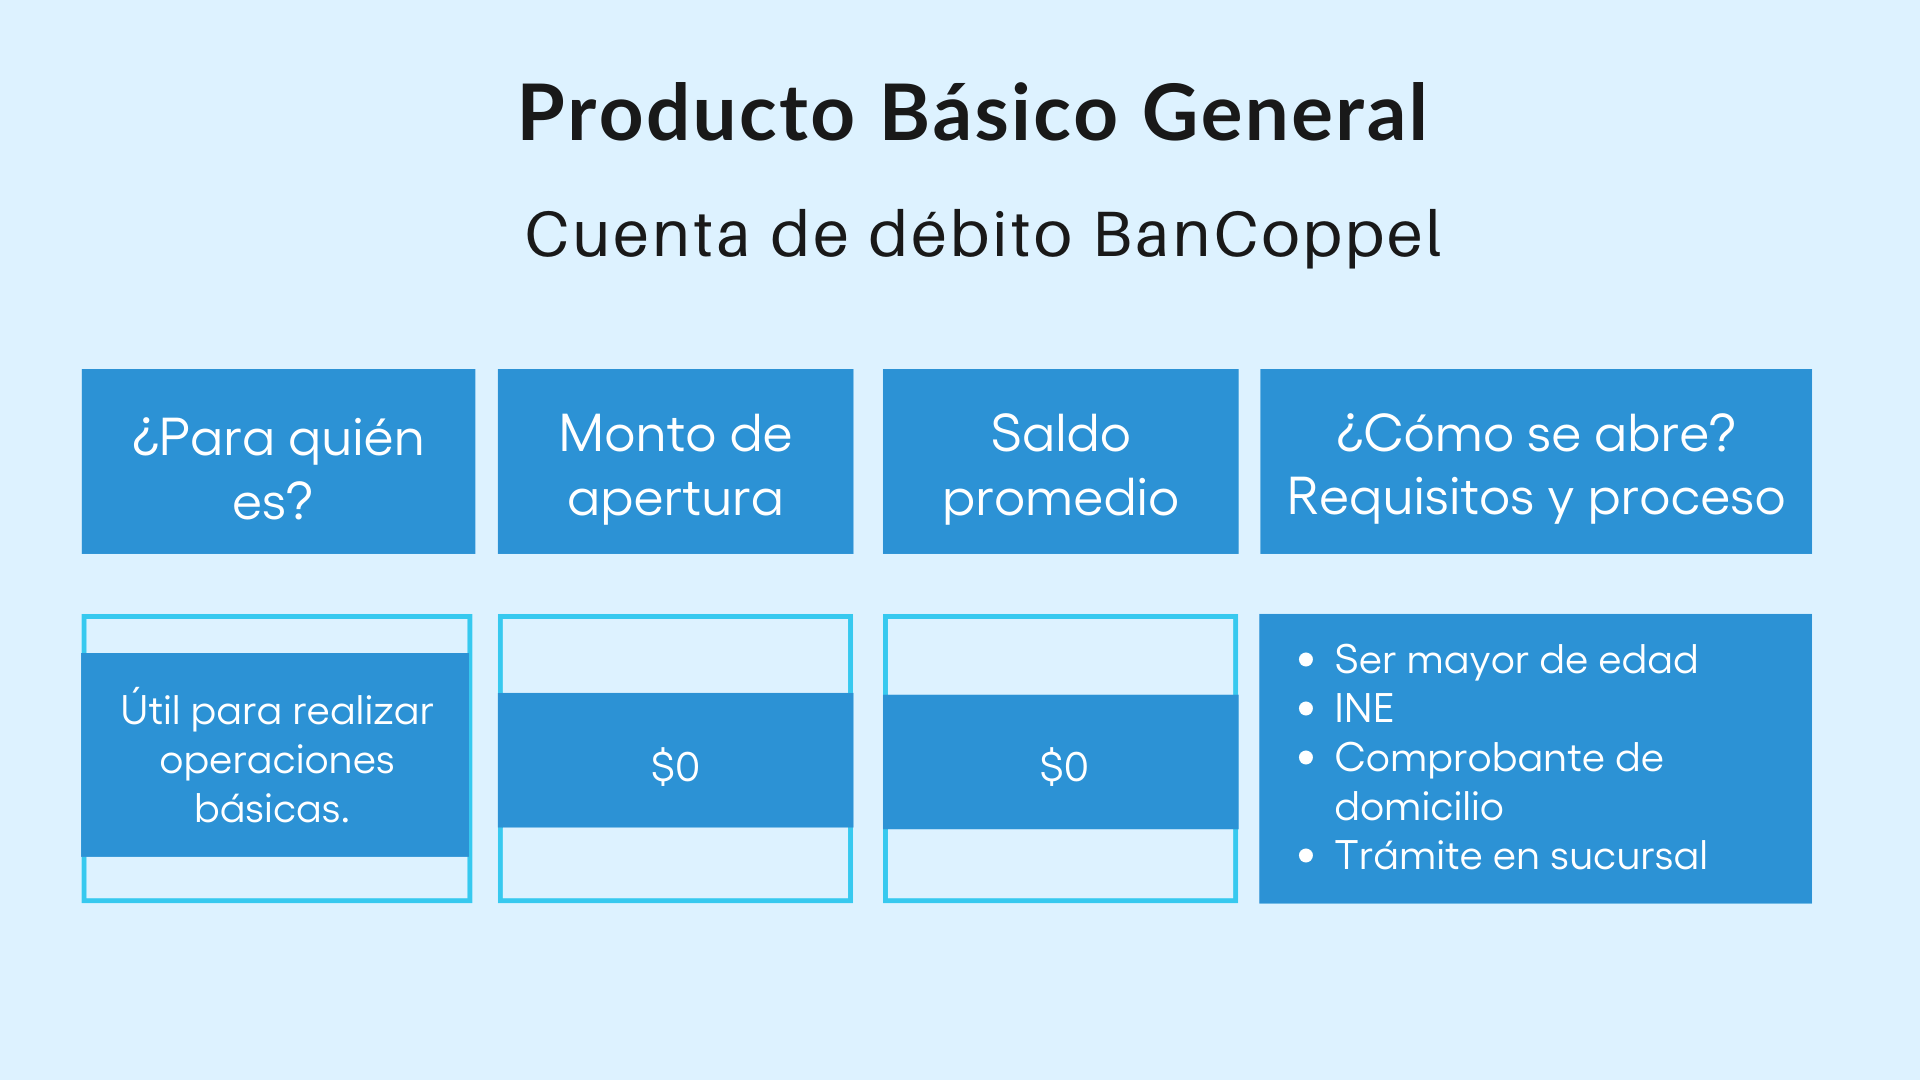 Producto Básico General BanCoppel